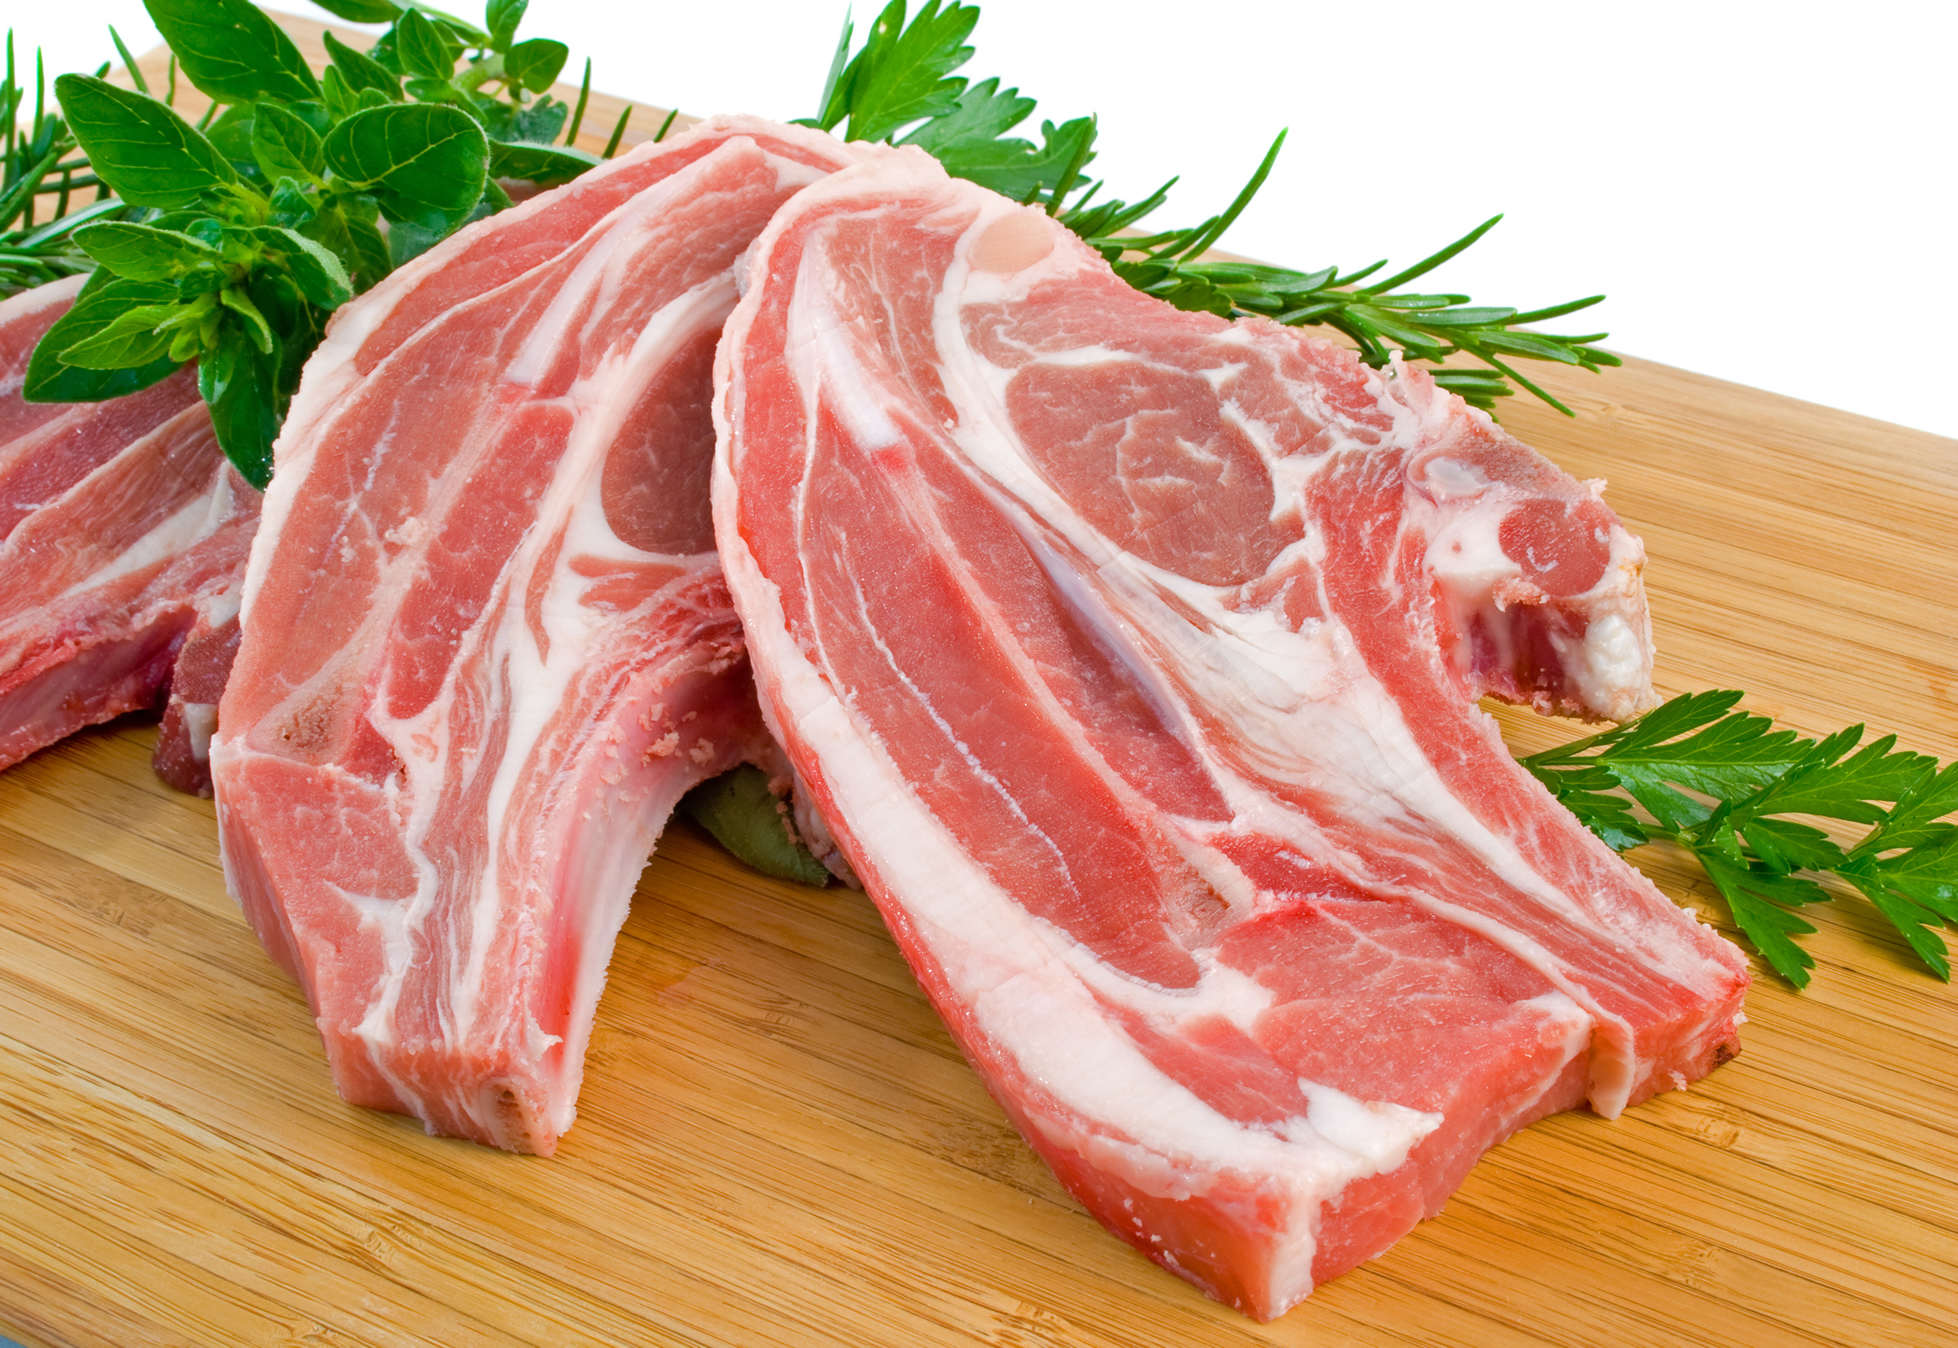 Россельхознадзор запретил импорт говядины и свинины из Бразилии